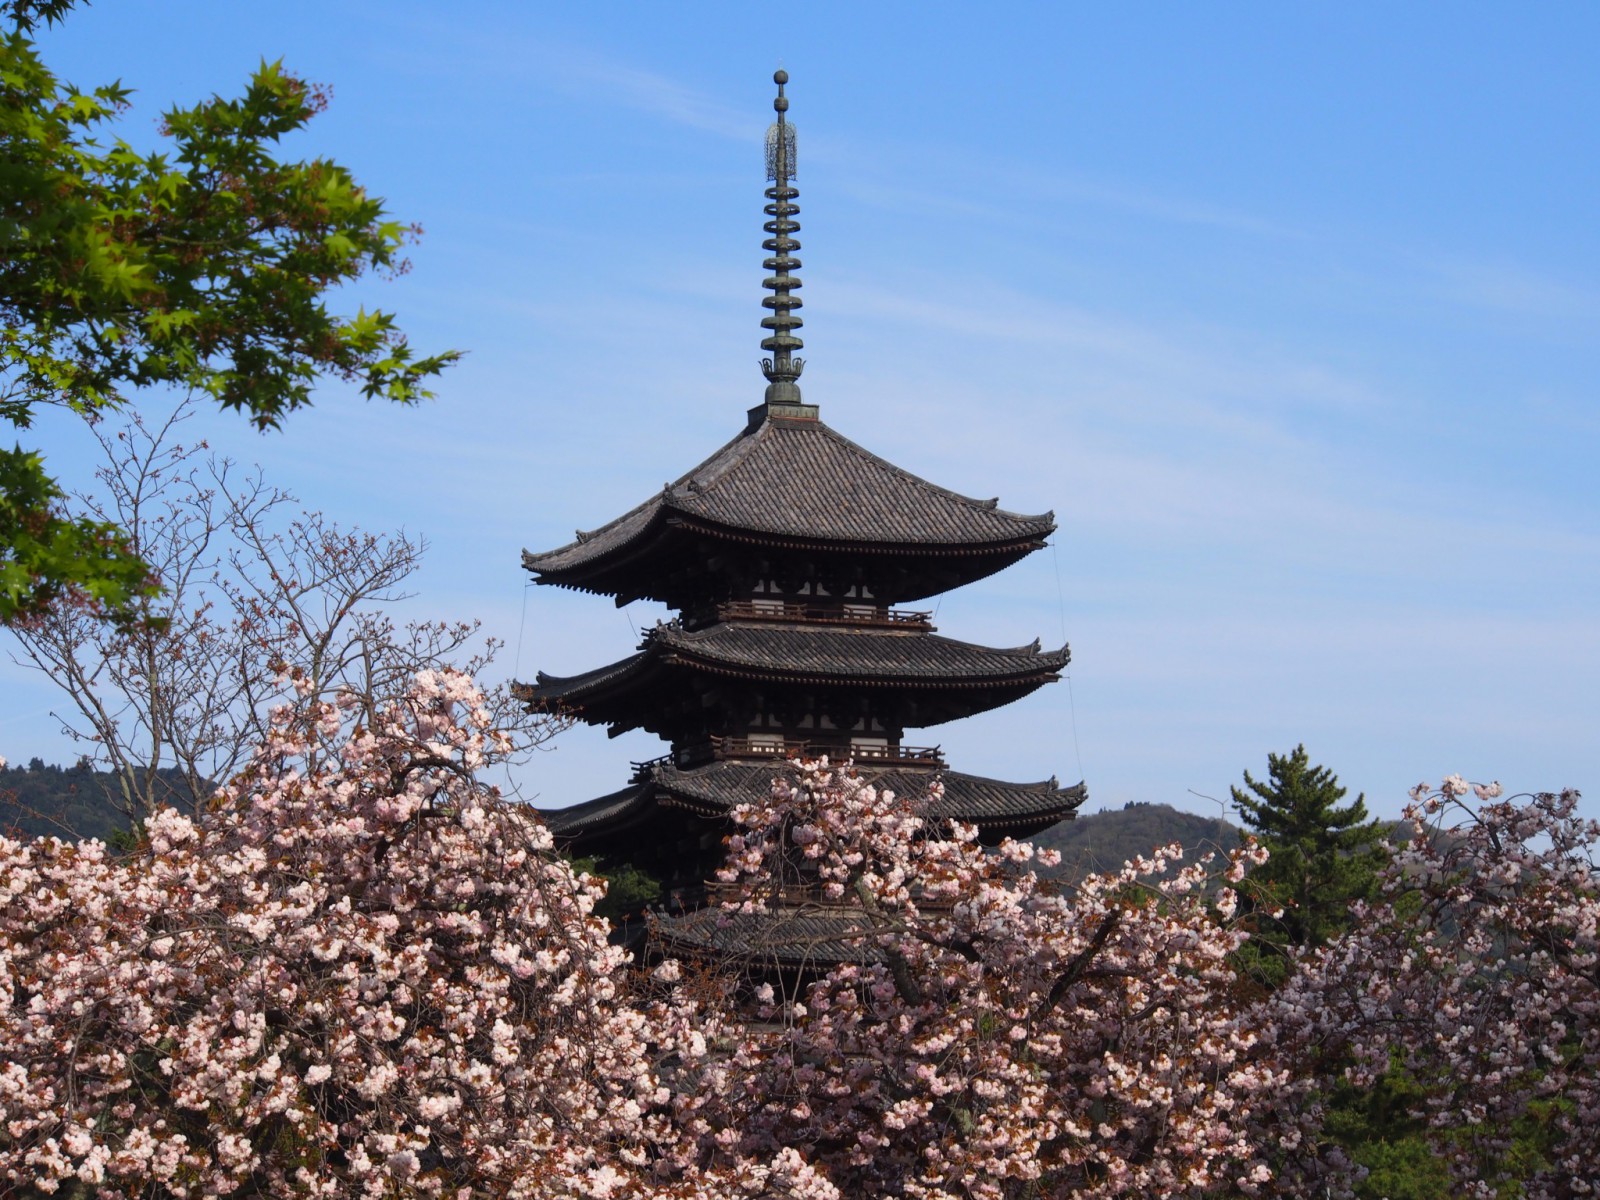 興福寺五重塔と八重桜の共演